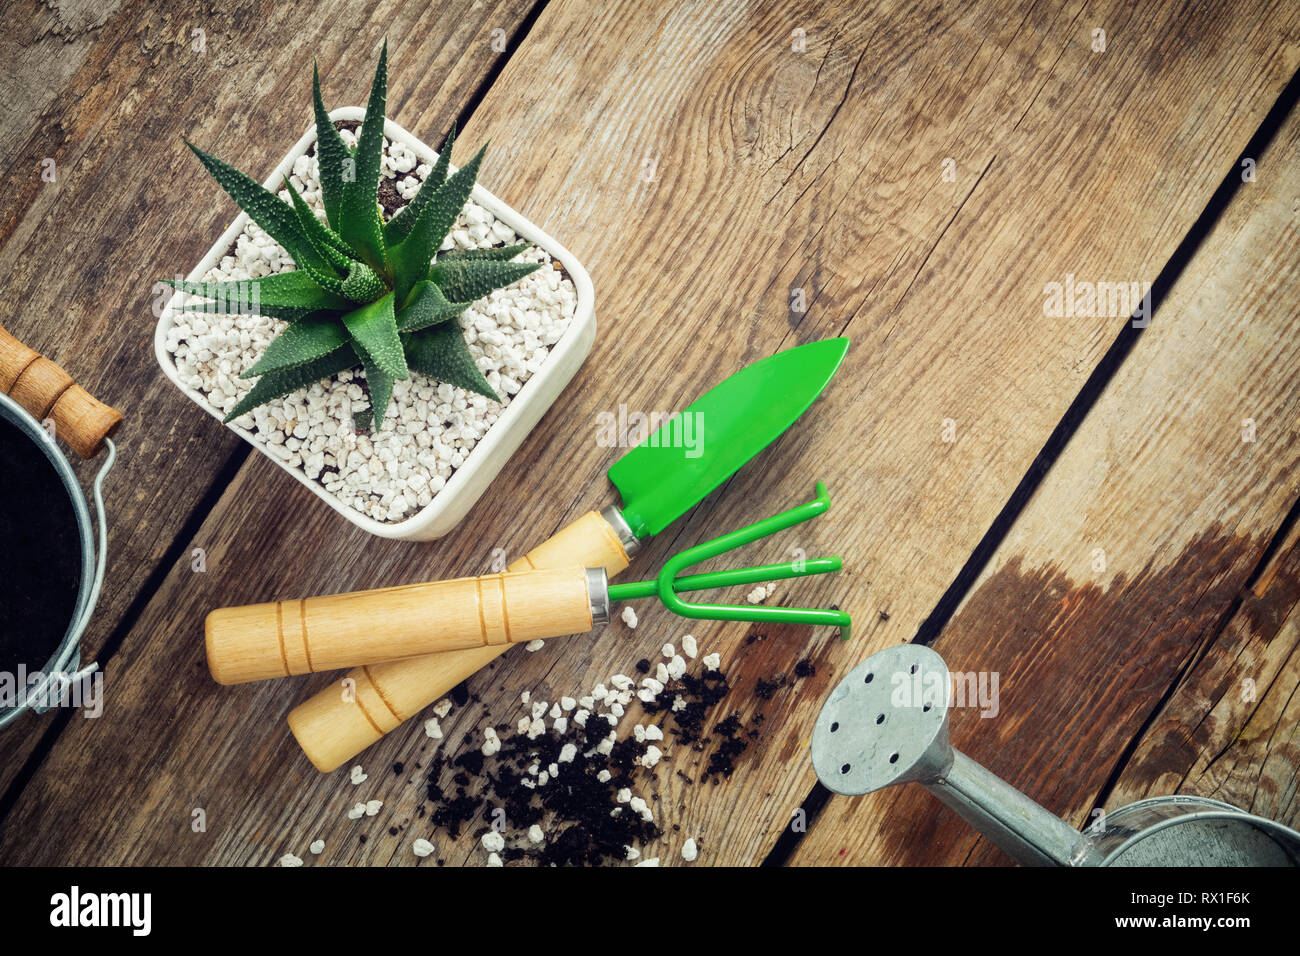 Suculentas Haworthia en maceta, mini herramientas de jardín, regadera y cuchara de mesa de madera. Vista desde arriba. Sentar planas. Foto de stock